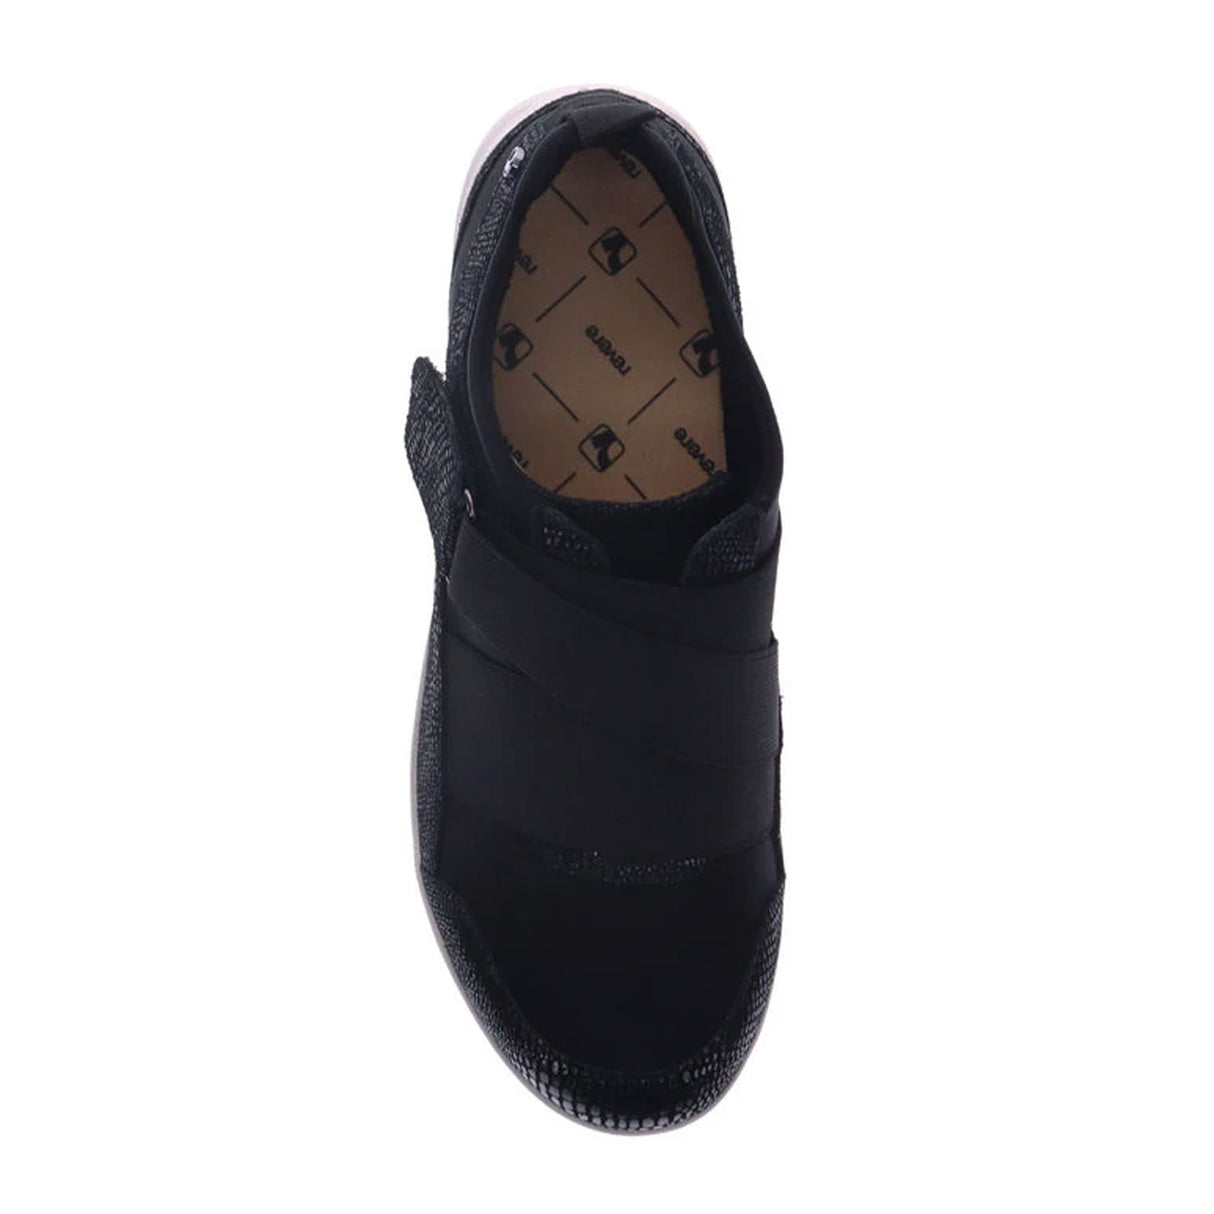 Revere Virginia Sneaker (Women) - Black Lizard Dress-Casual - Sneakers - The Heel Shoe Fitters